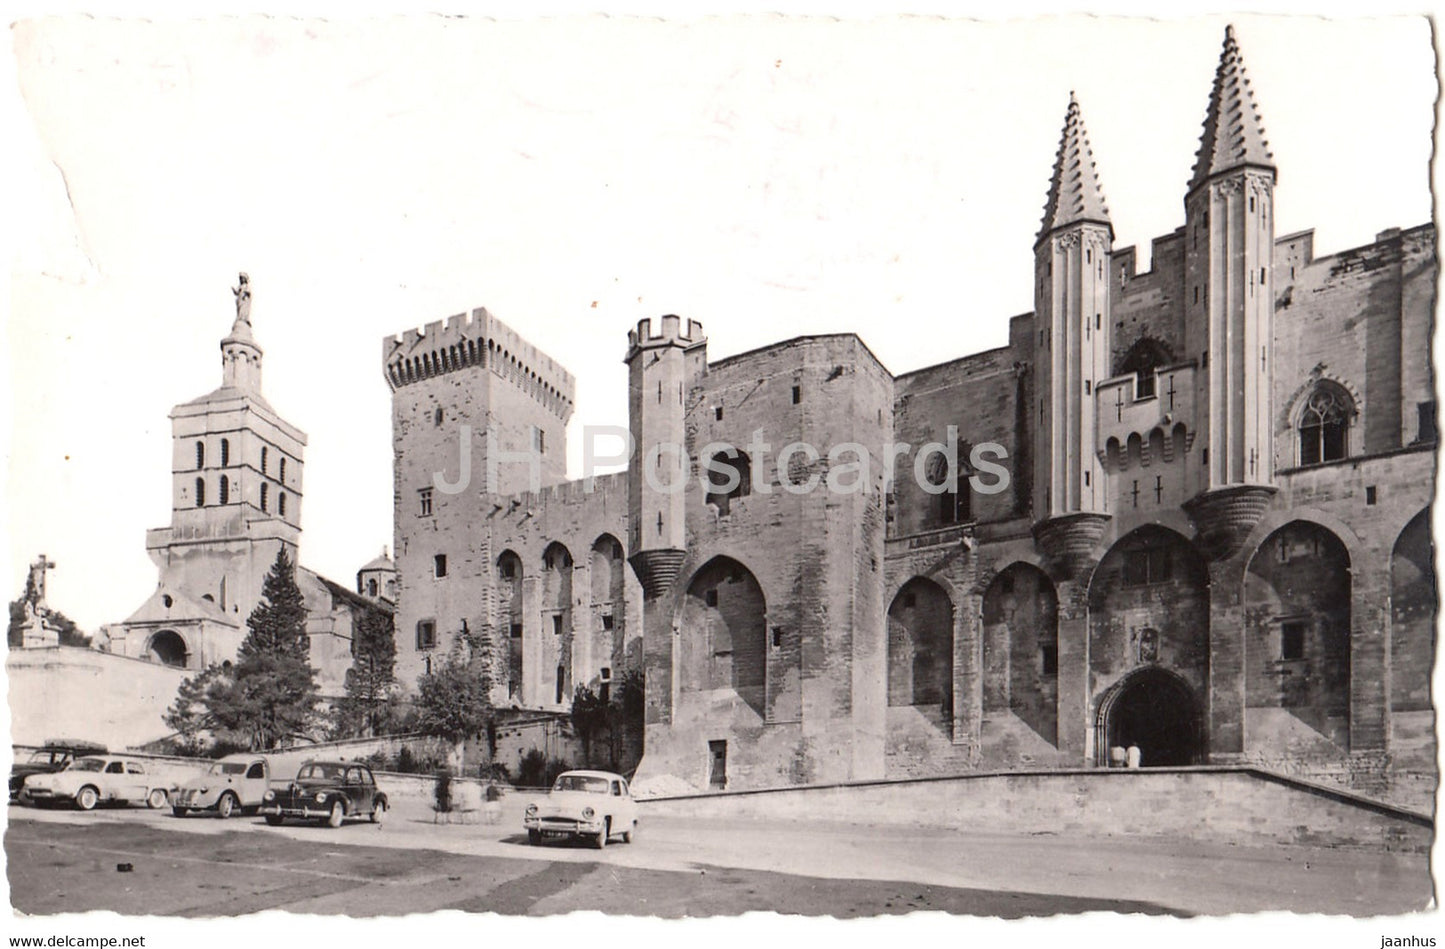 Avignon - LE Palais des Papes - La Cathedrale de Notre Dame des Doms - car - 1961 - France - used - JH Postcards